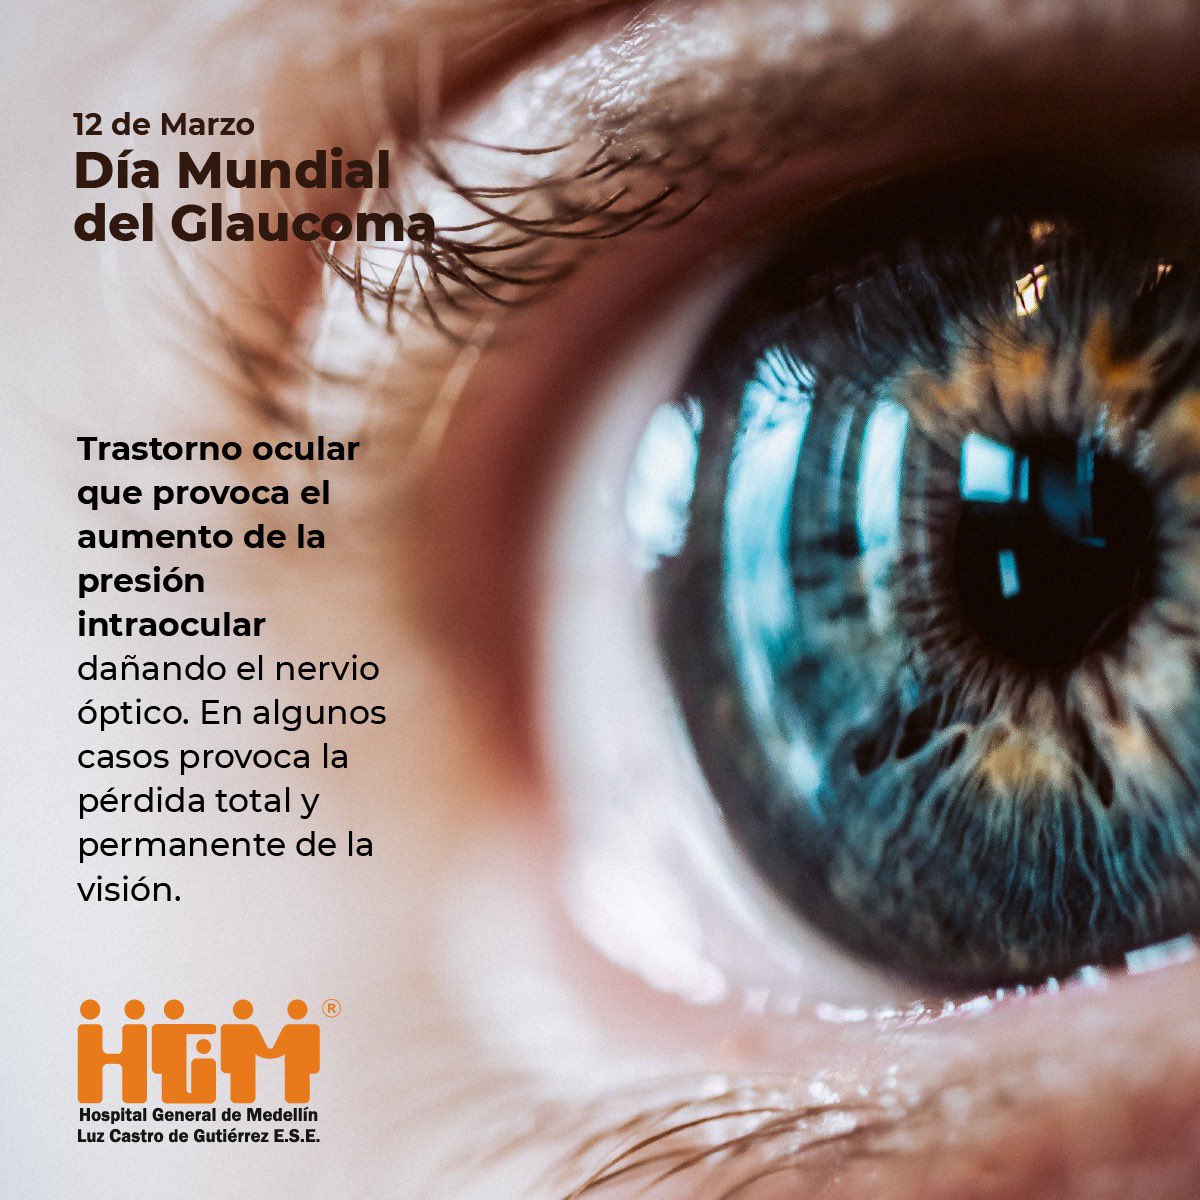 El Día Mundial del Glaucoma nos recuerda la importancia del cuidado ocular y la detección temprana de la enfermedad. Con exámenes regulares podemos preservar la visión y reducir el impacto de esta patología silenciosa. #HGMTeCuida